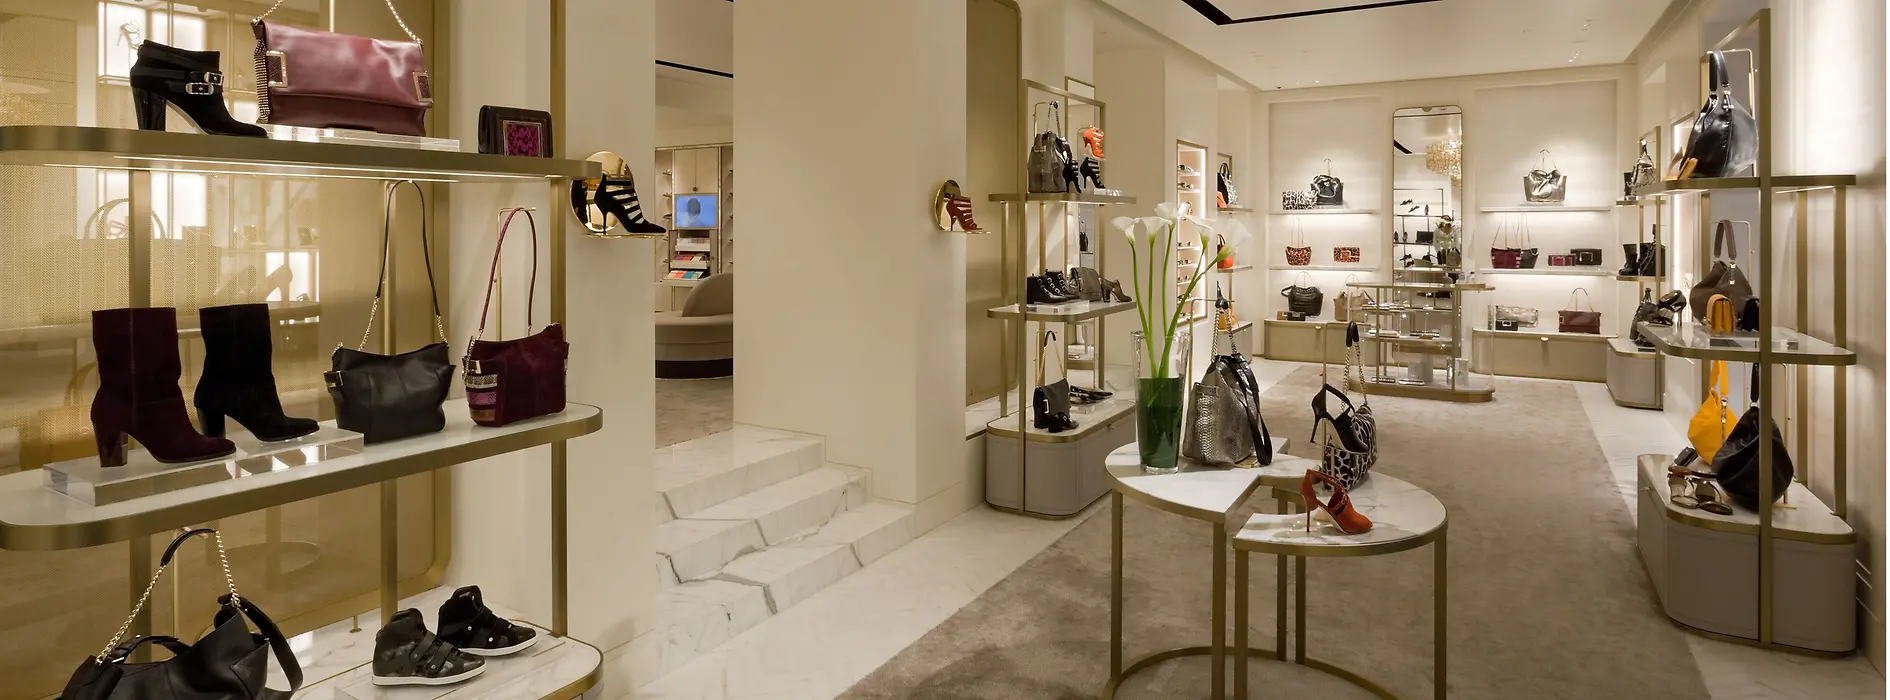 Exclusive Louis Vuitton store in Vienna - VIENNA, AUSTRIA, EUROPE